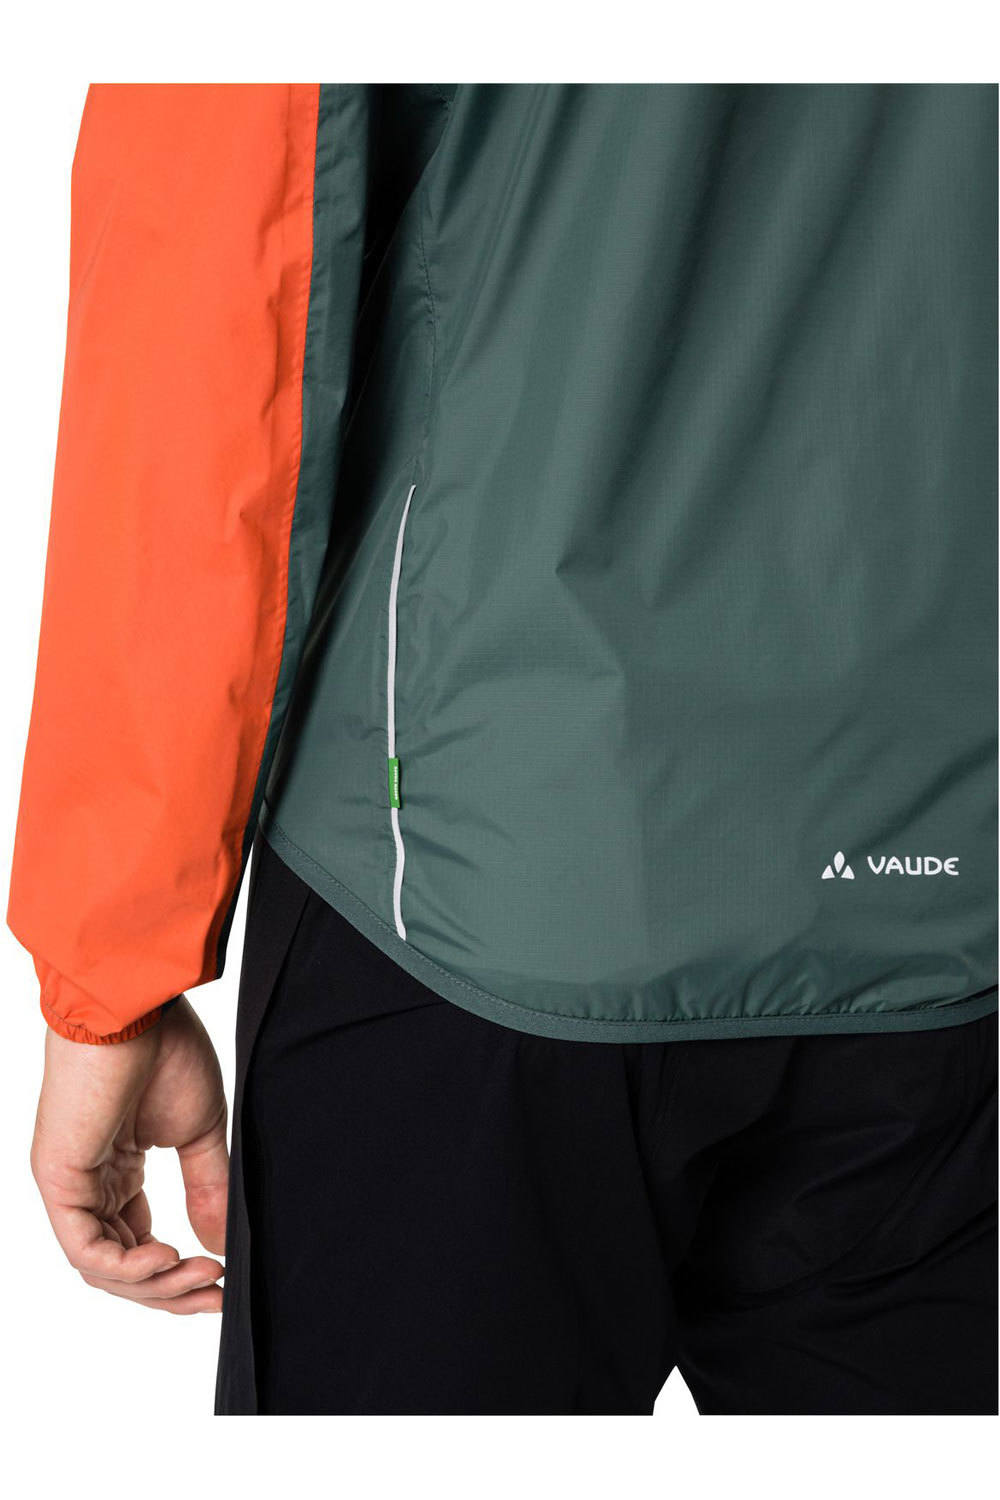 Vaude chaqueta impermeable ciclismo hombre Men's Drop Jacket III 03